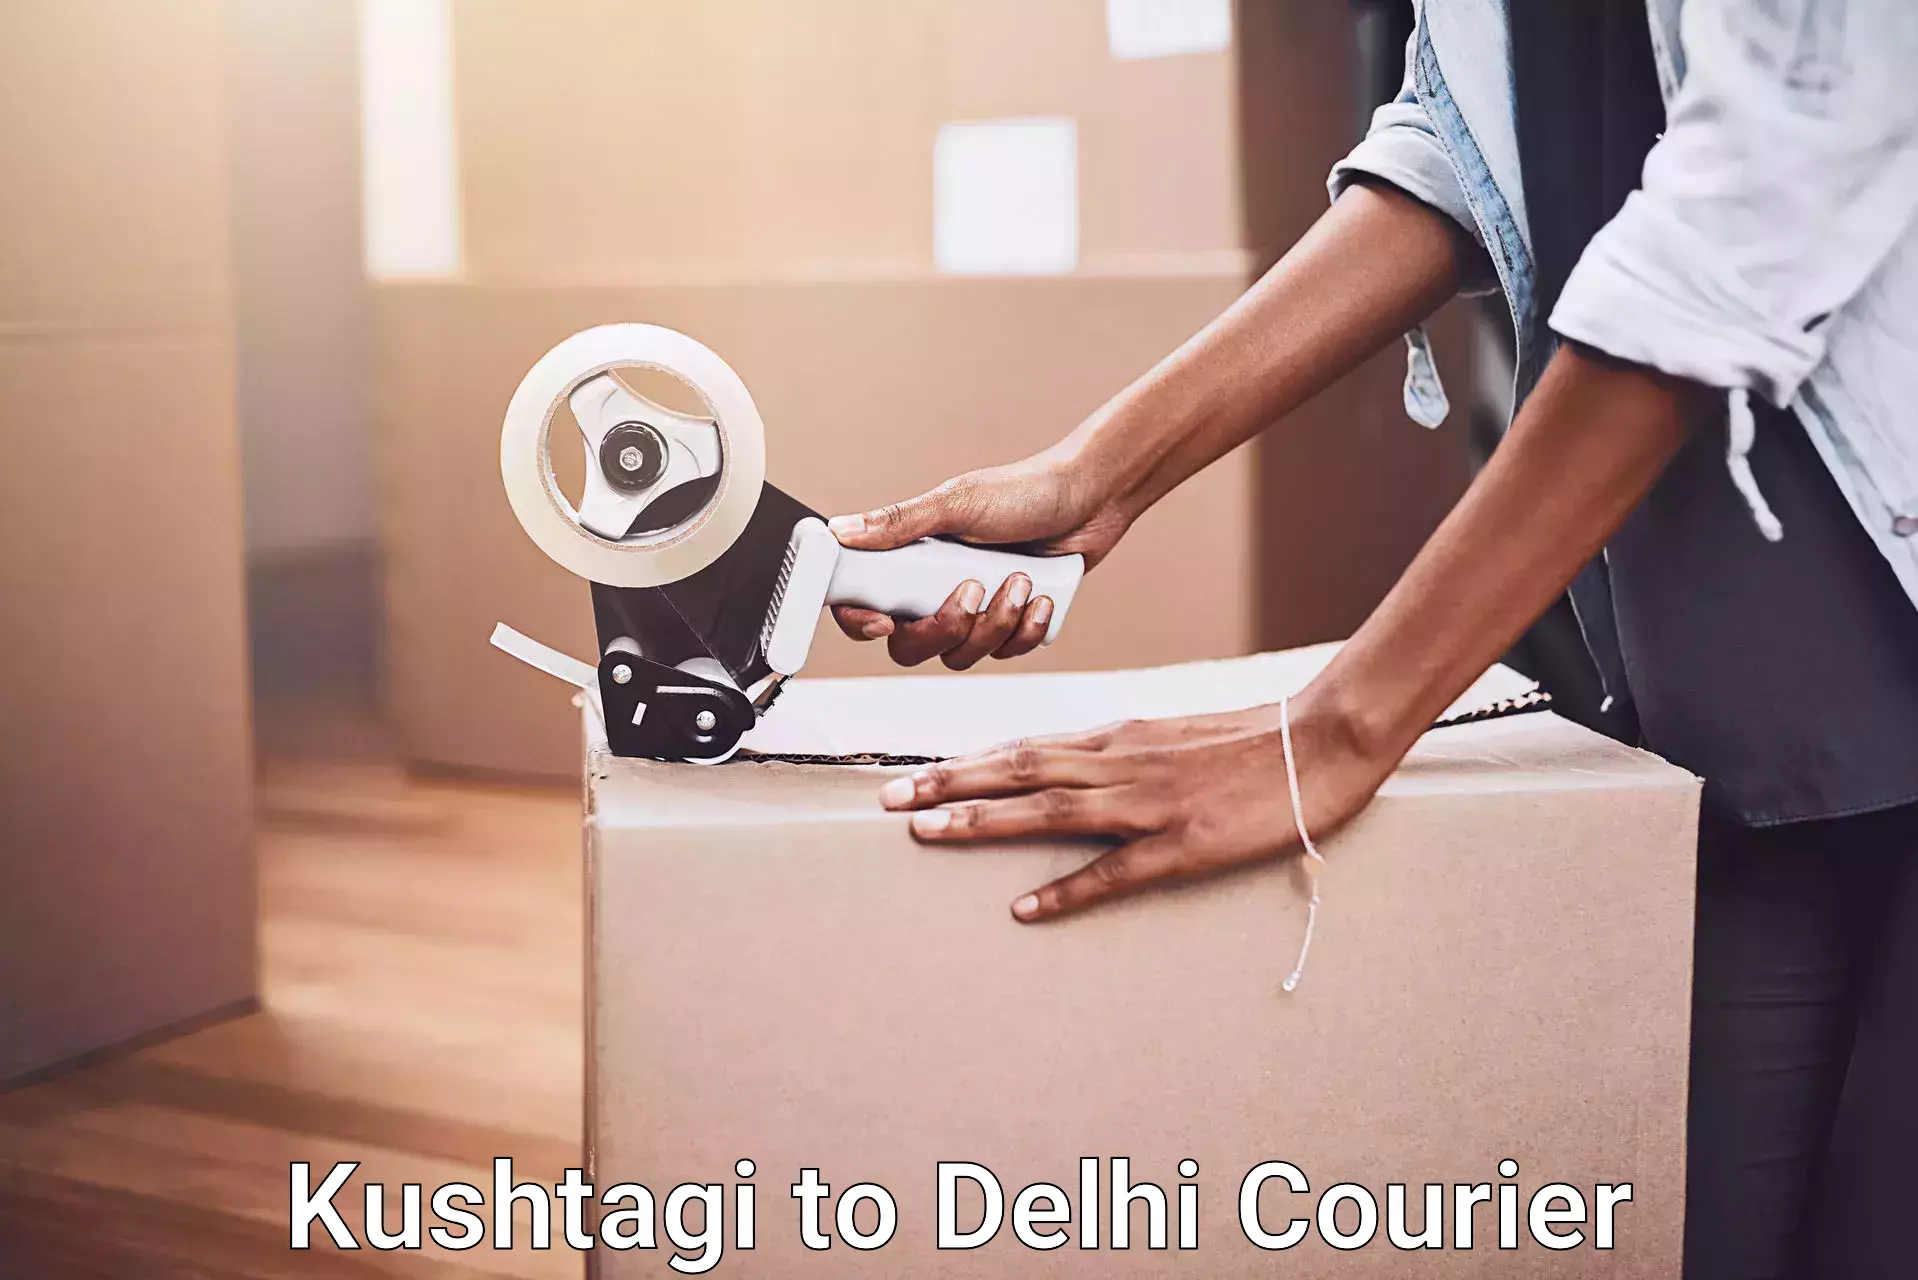 Furniture moving service Kushtagi to Delhi